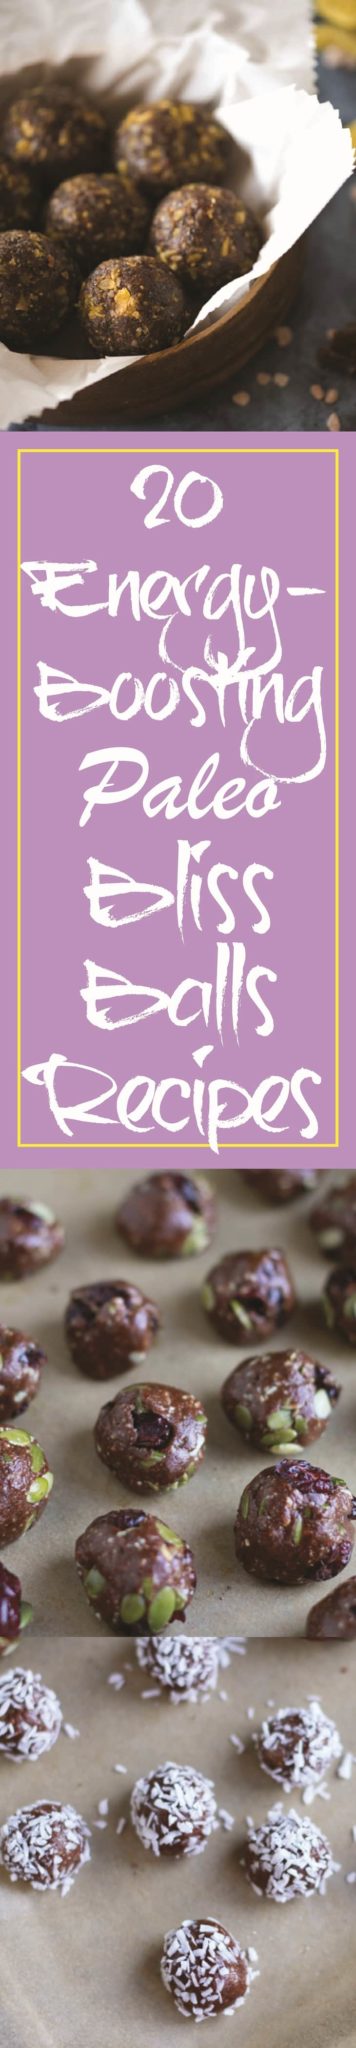 Paleo Bliss Ball Recipes [Paleo] #paleo #recipes - https://paleoflourish.com/paleo-bliss-balls-recipes/